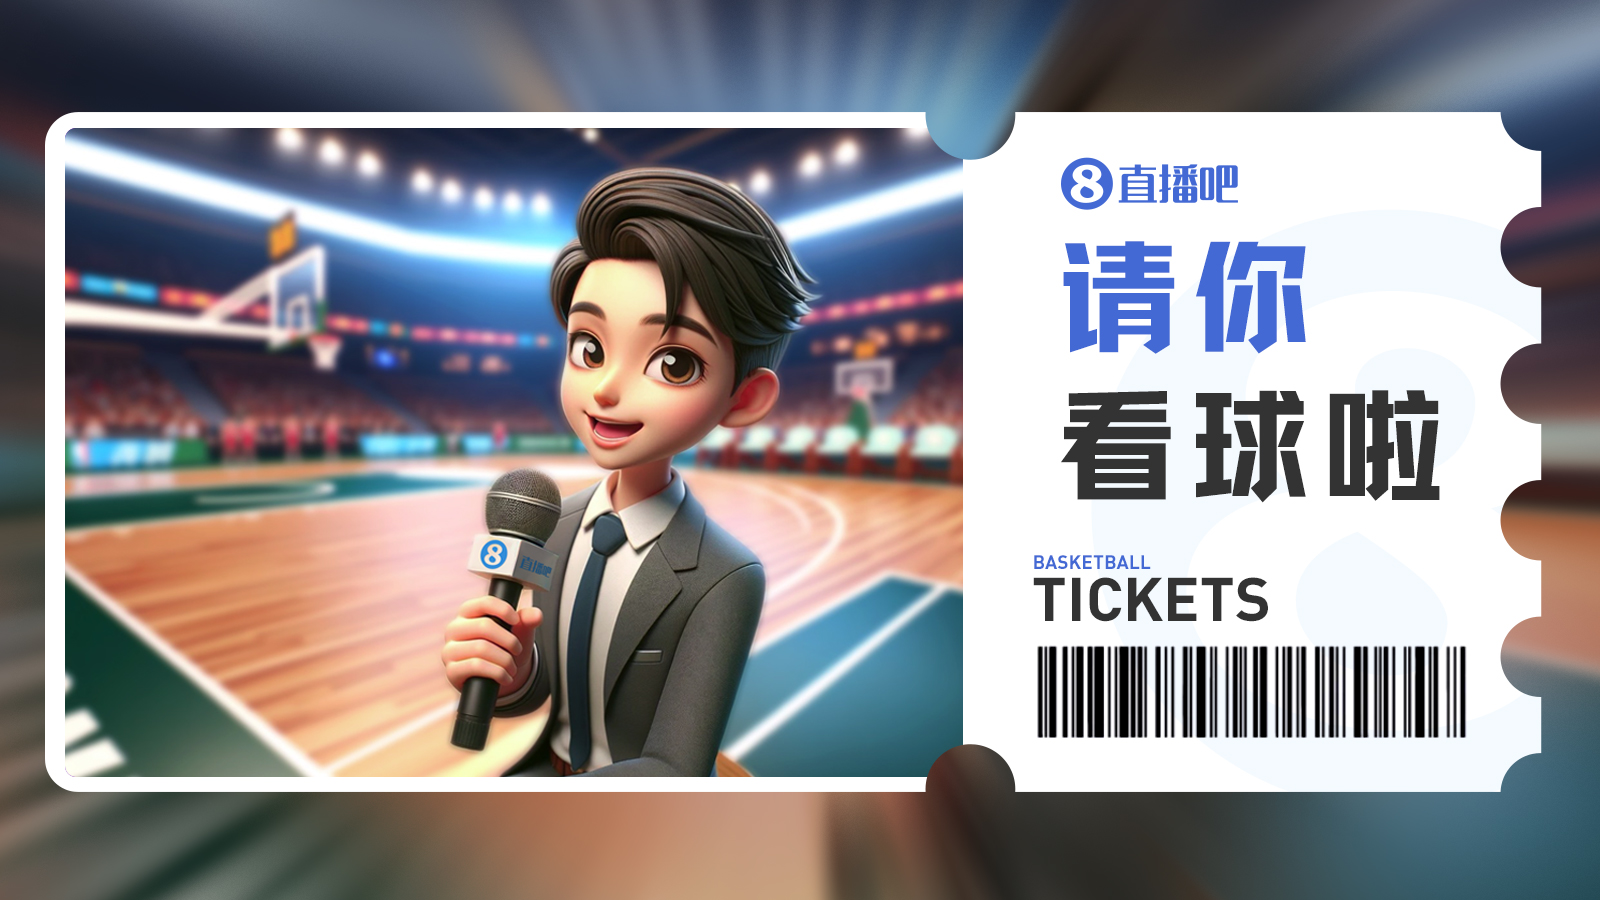 『请你看球』第7期留言抽3月27日『北京vs广东』免费门票